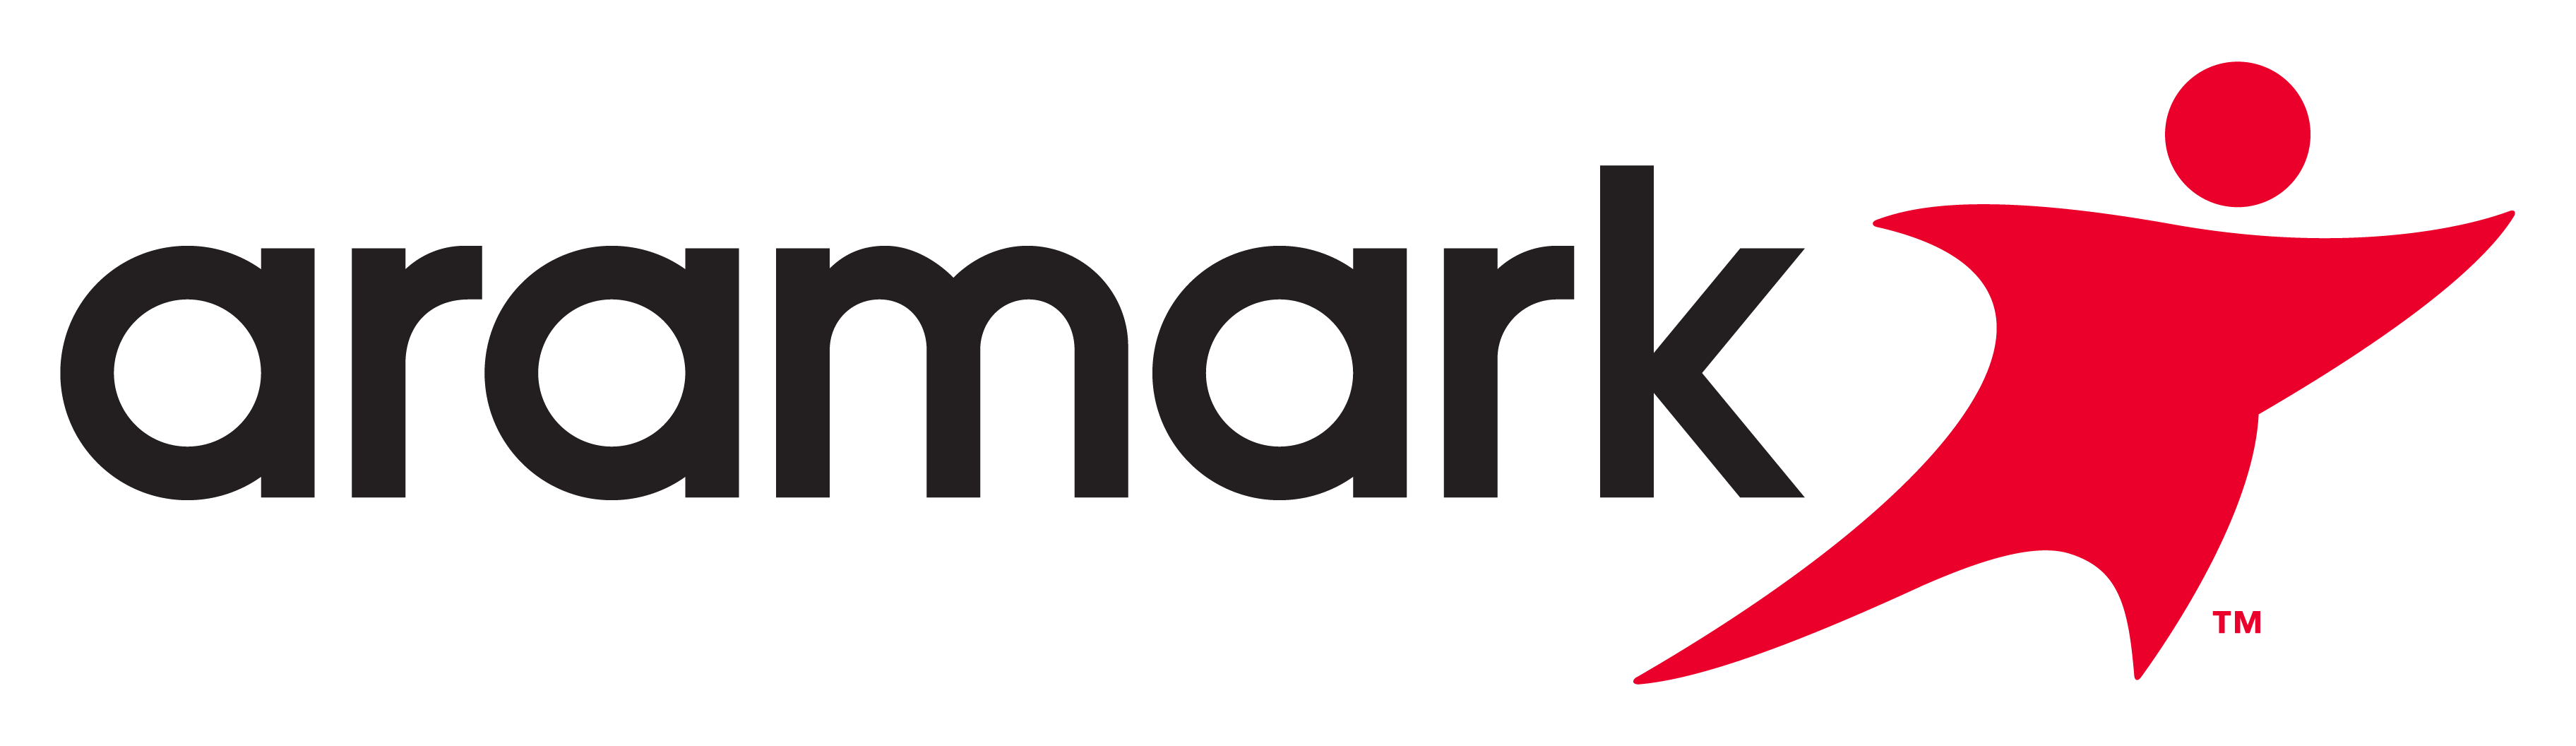 Aramark Logo PNG Image